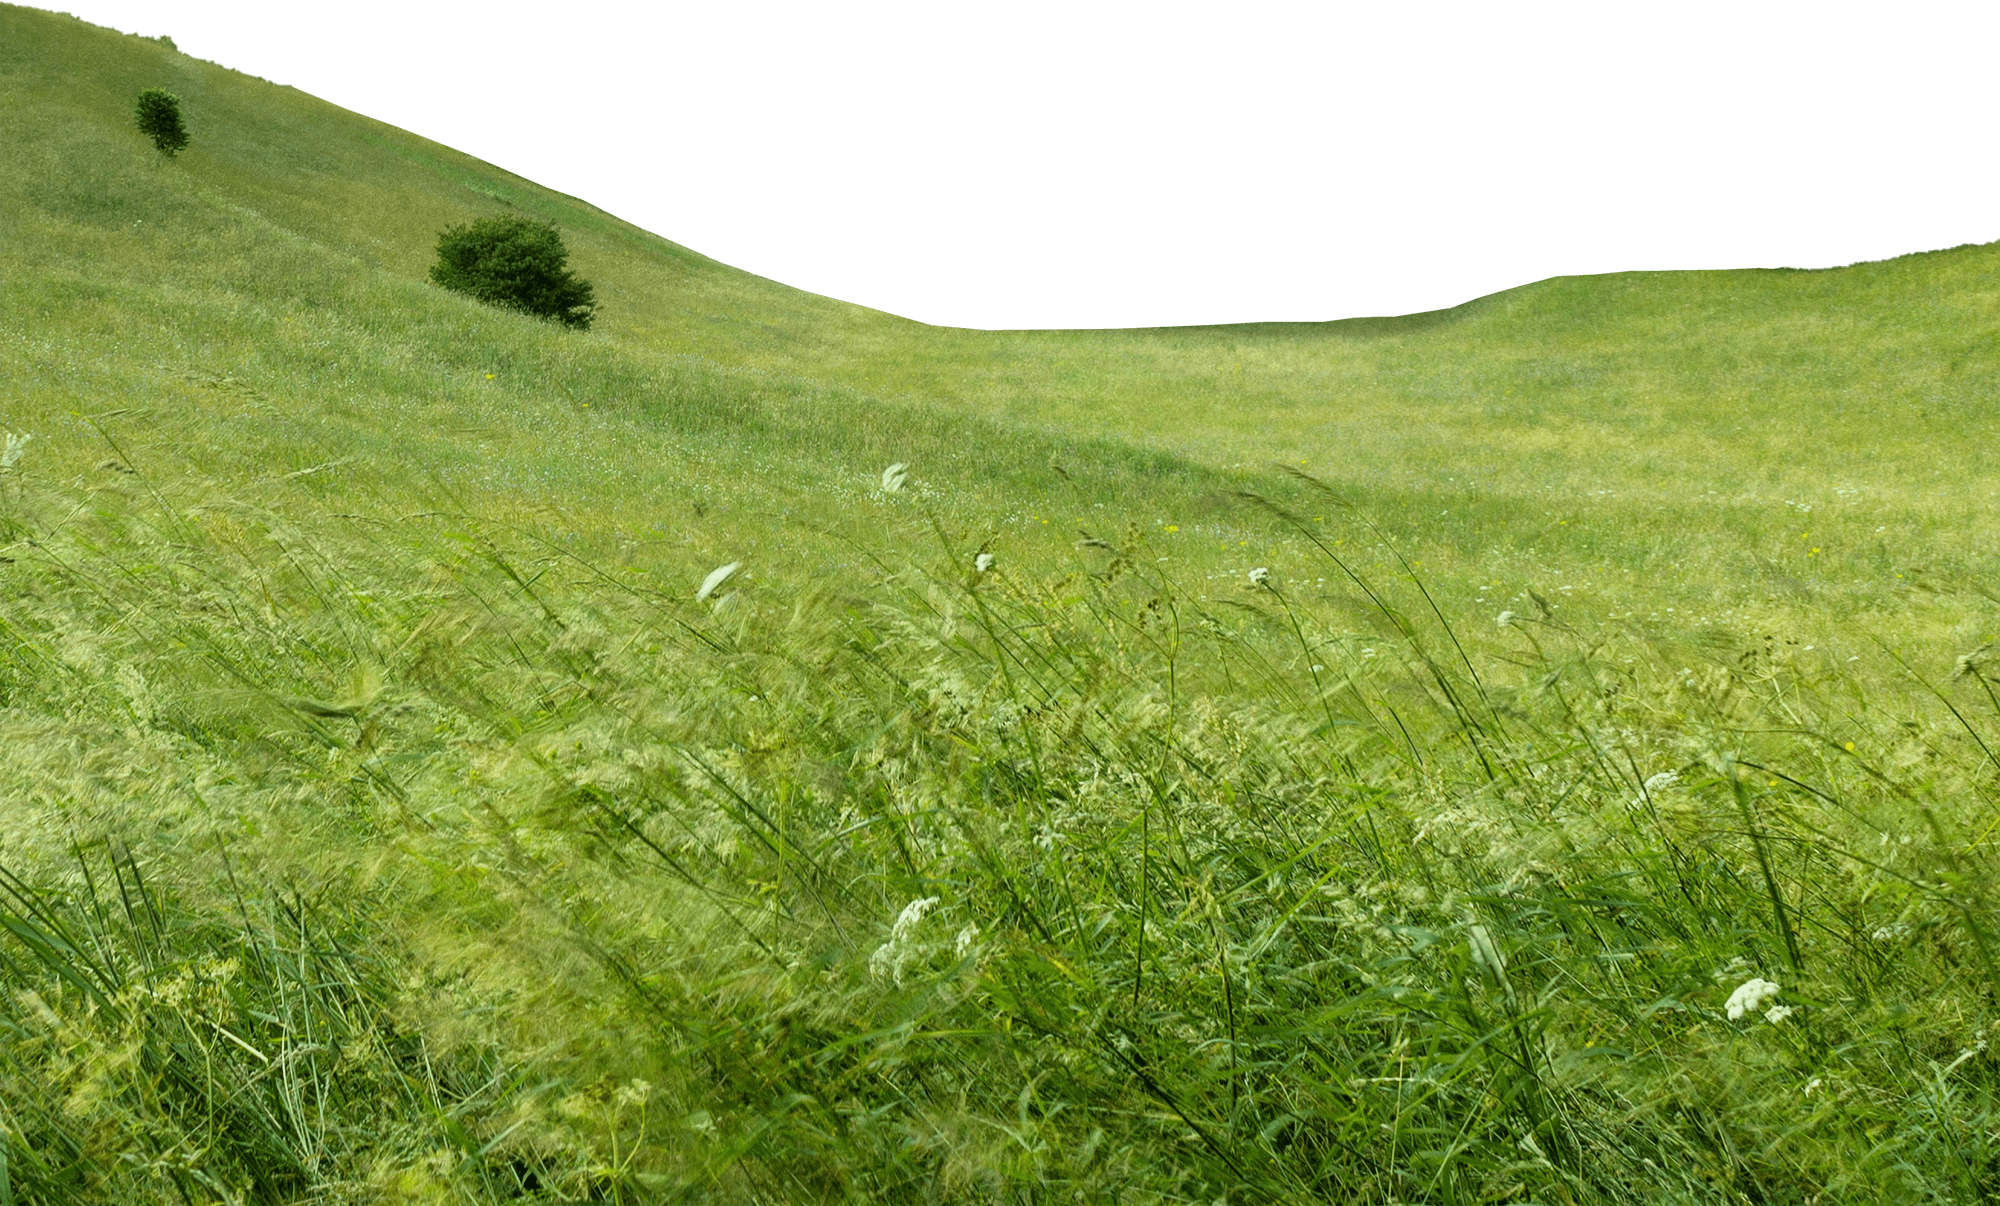 Green grassy field